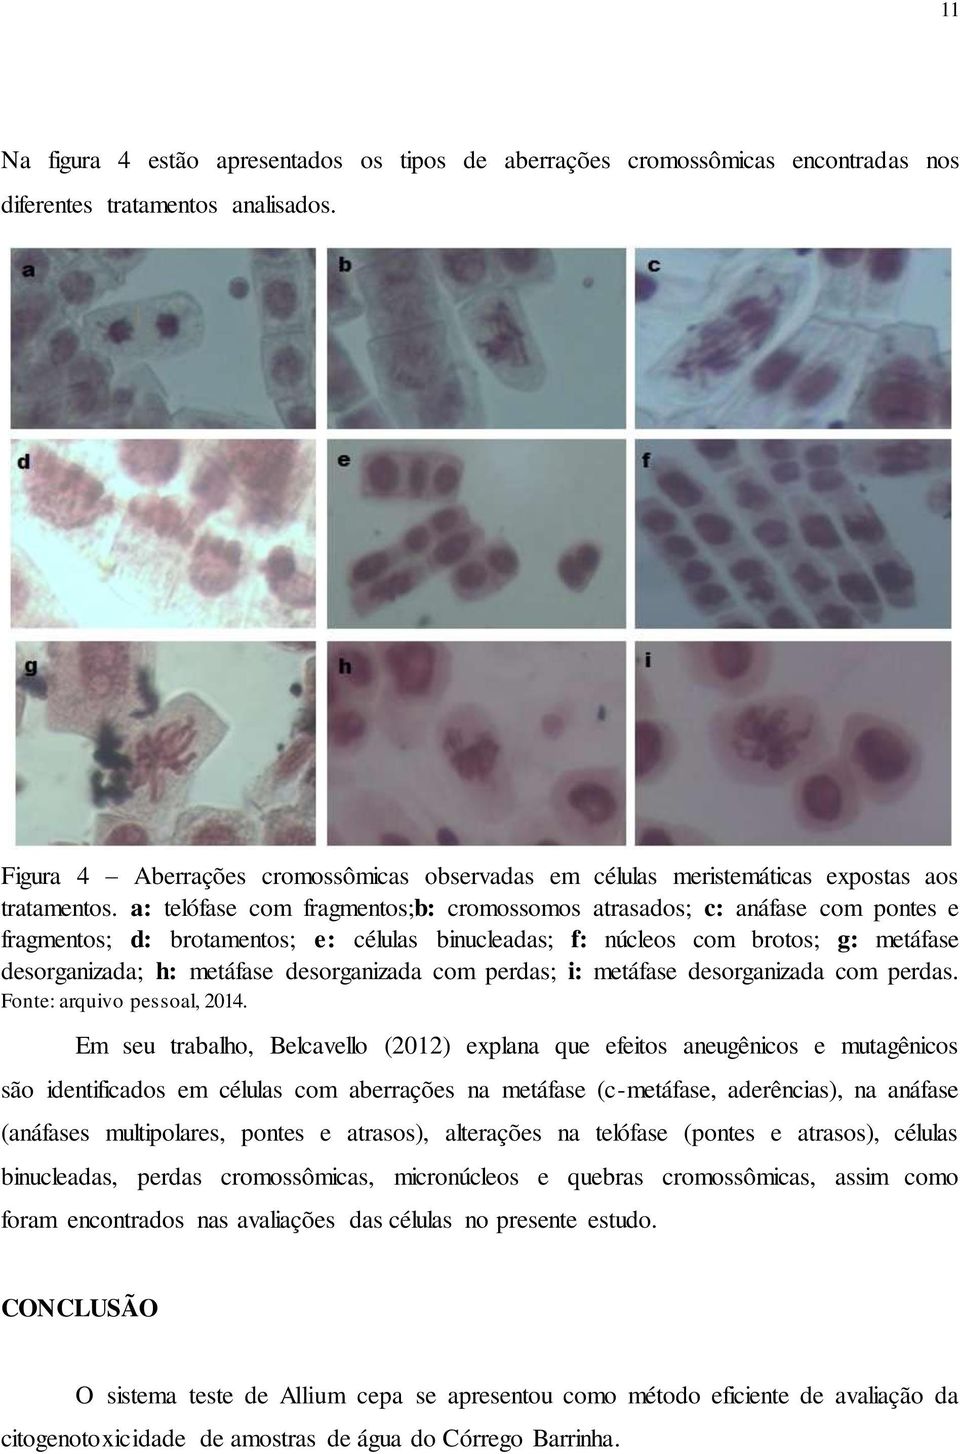 a: telófase com fragmentos;b: cromossomos atrasados; c: anáfase com pontes e fragmentos; d: brotamentos; e: células binucleadas; f: núcleos com brotos; g: metáfase desorganizada; h: metáfase